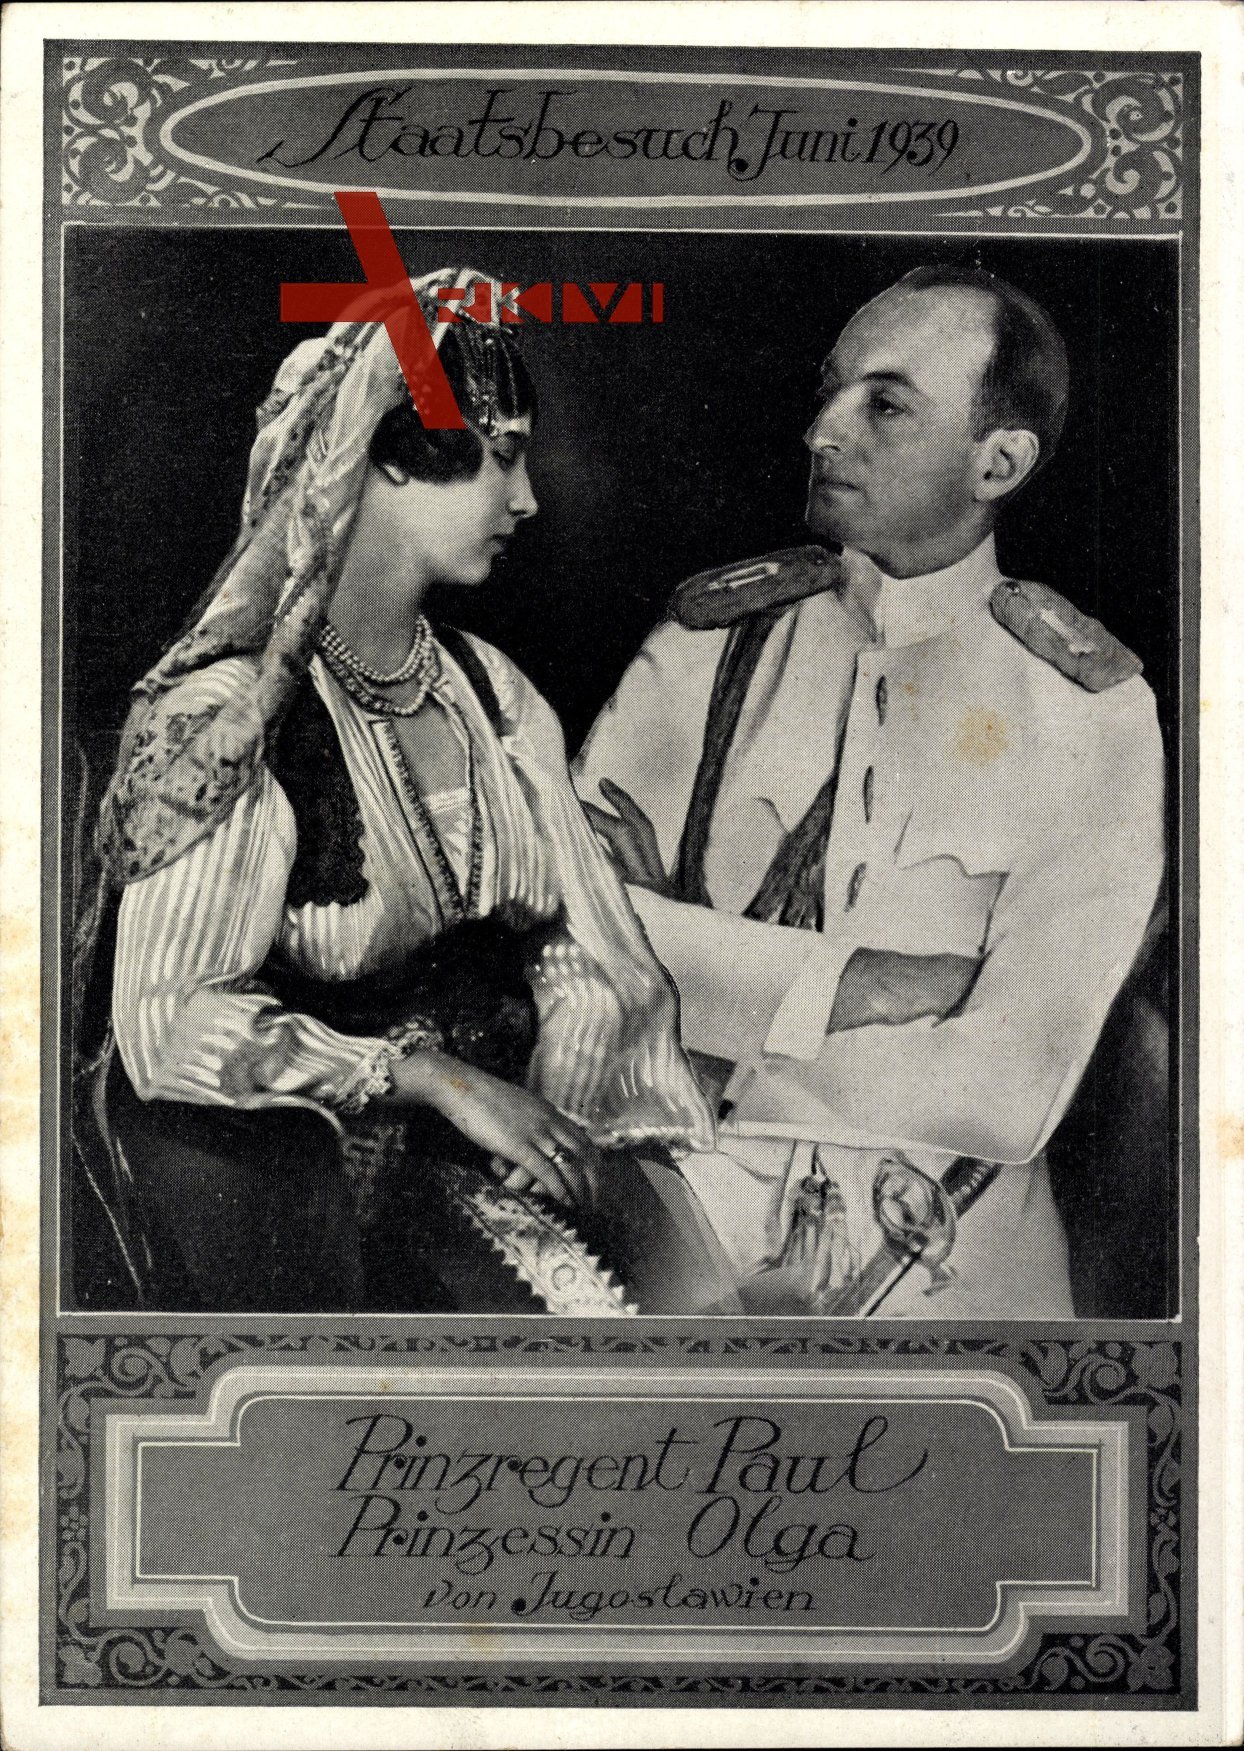 Staatsbesuch Juni 1939, Prinzregent Paul von Jugoslawien, Prinzessin Olga